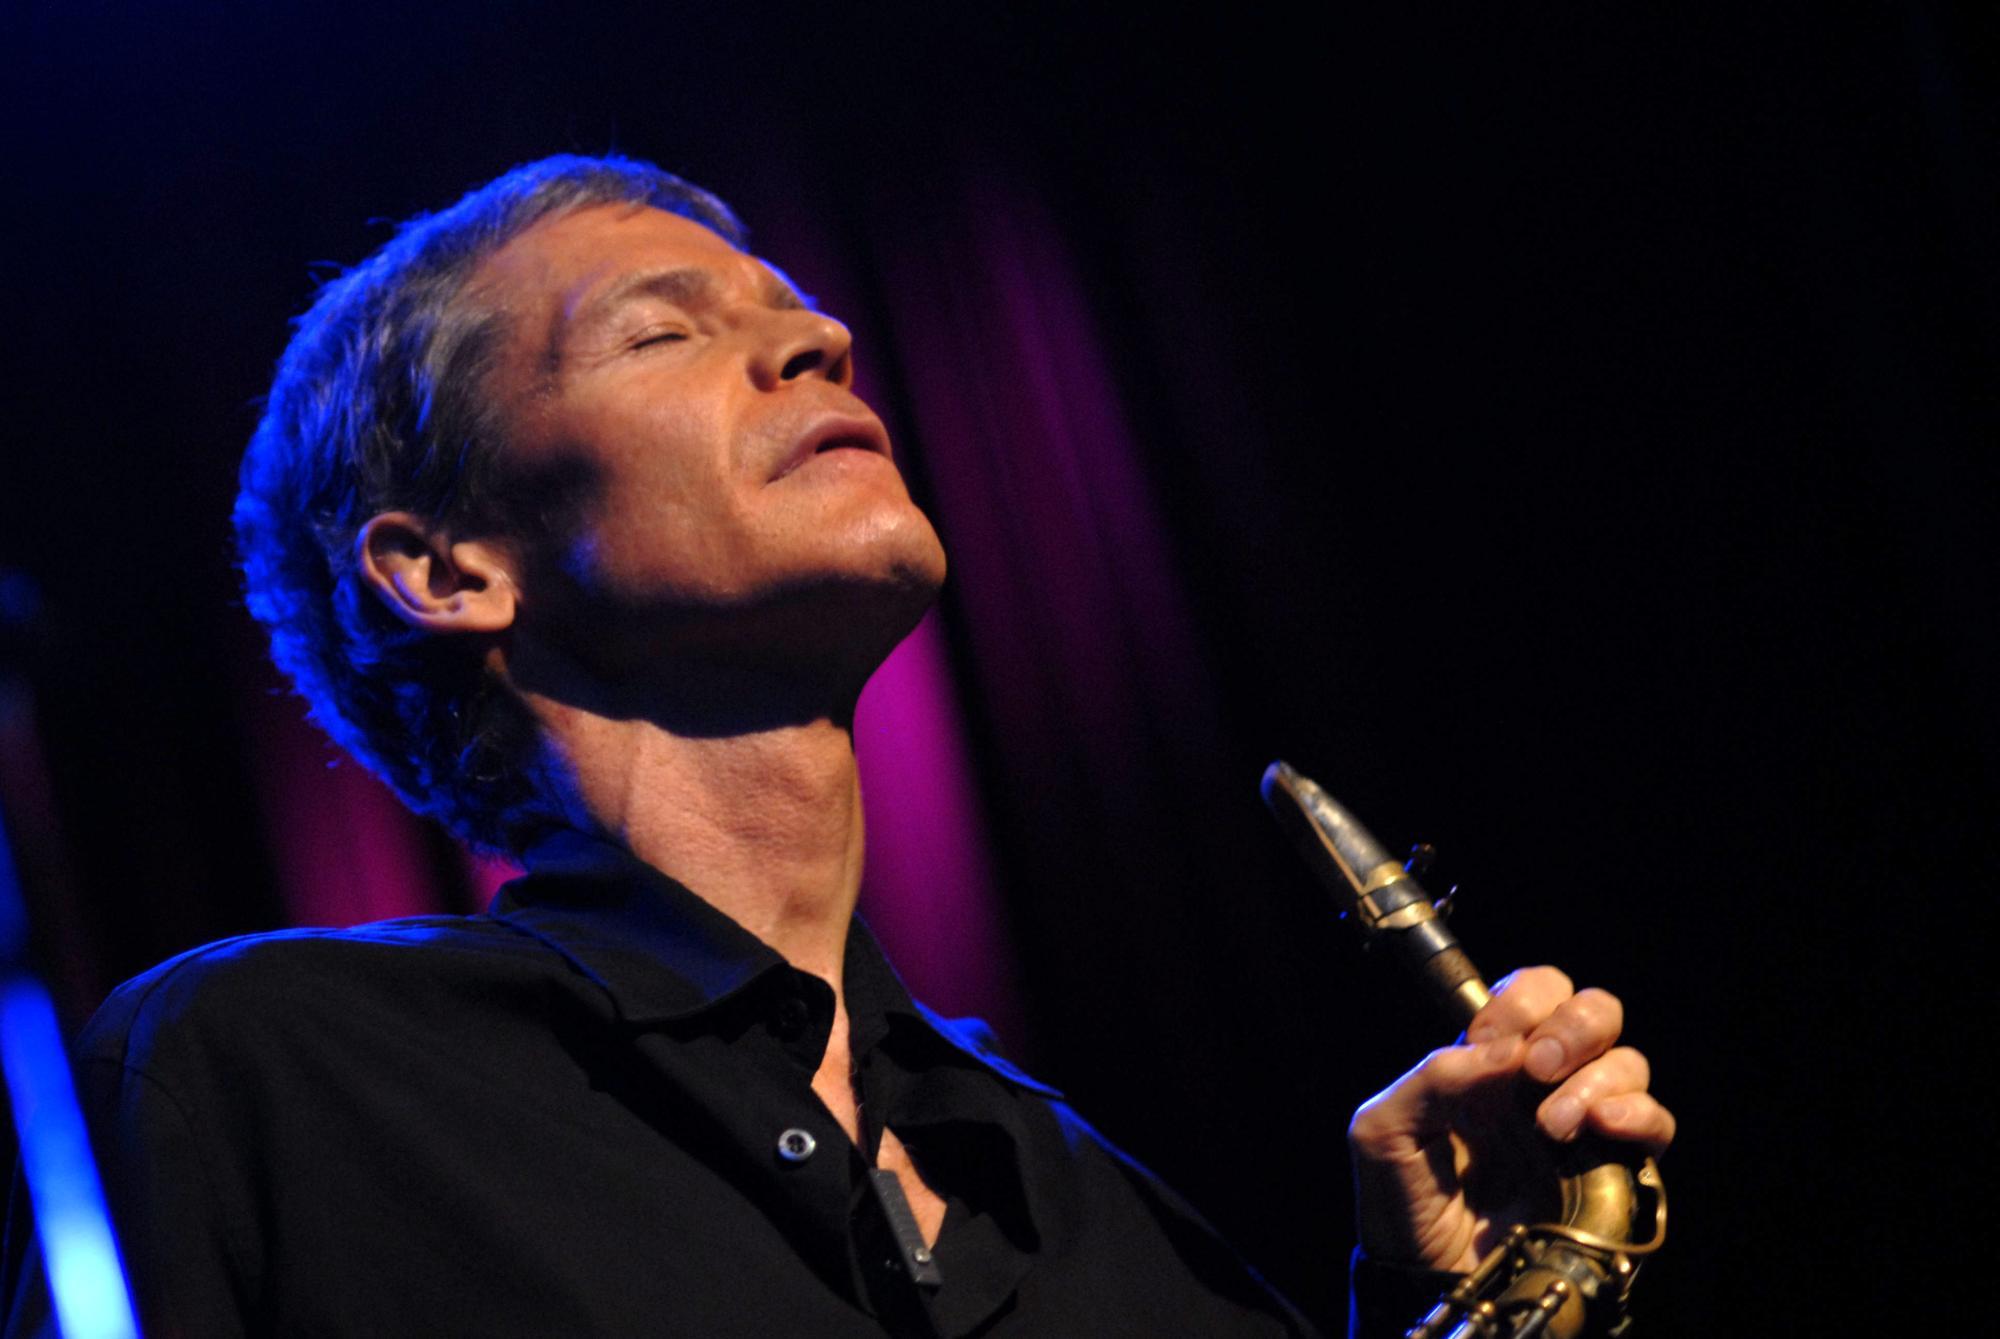 Prostata-Krebs: Trauer um einen der erfolgreichsten Jazz-Saxofonisten